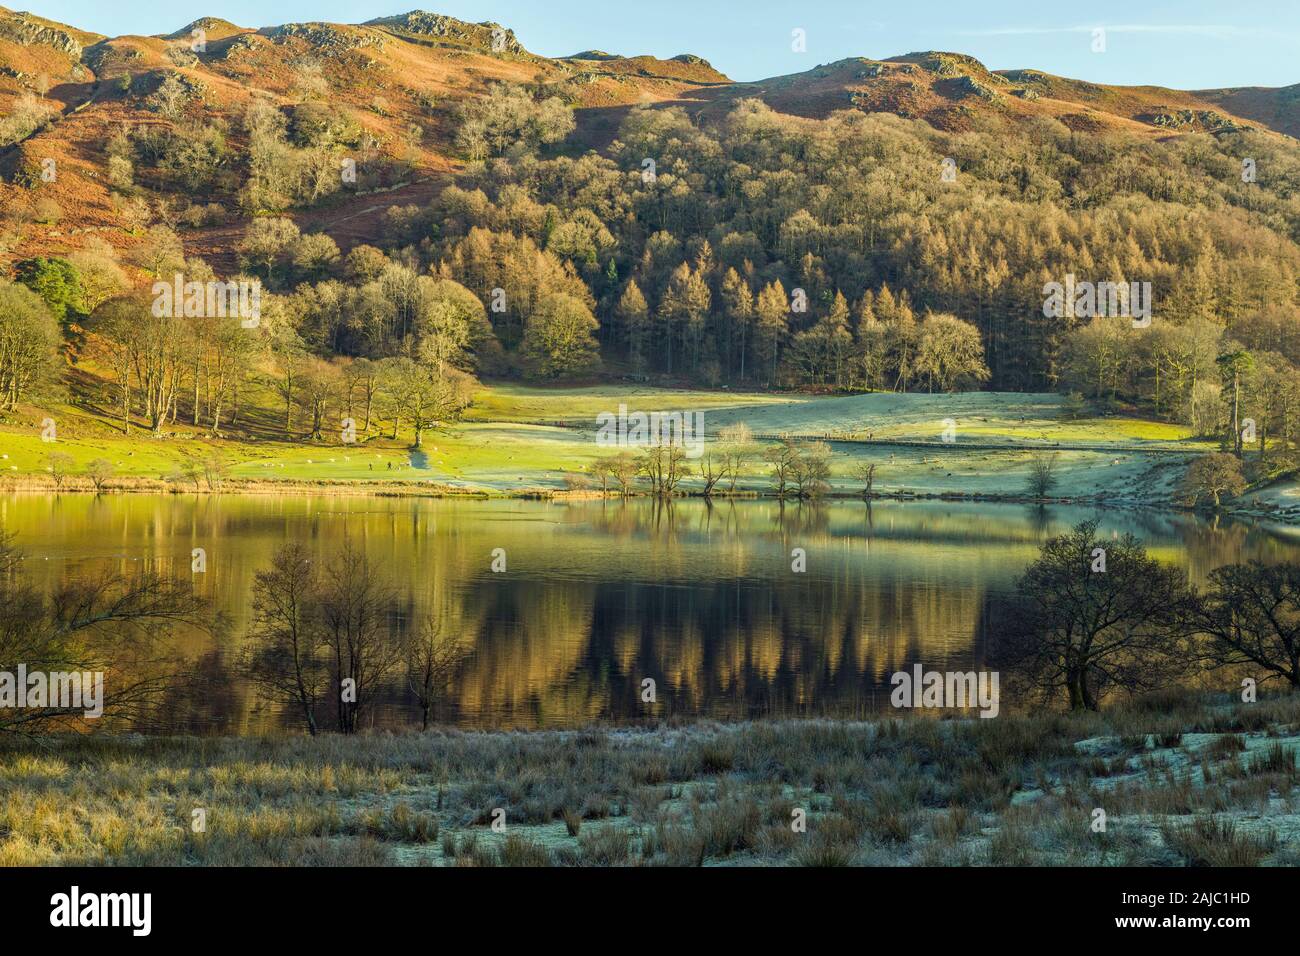 Loughrigg Fiel und Loughrigg Tarn Lake District Cumbria. Schöne Rückblicke auf die Bäume in den ruhigen gewässern des tarn. Stockfoto